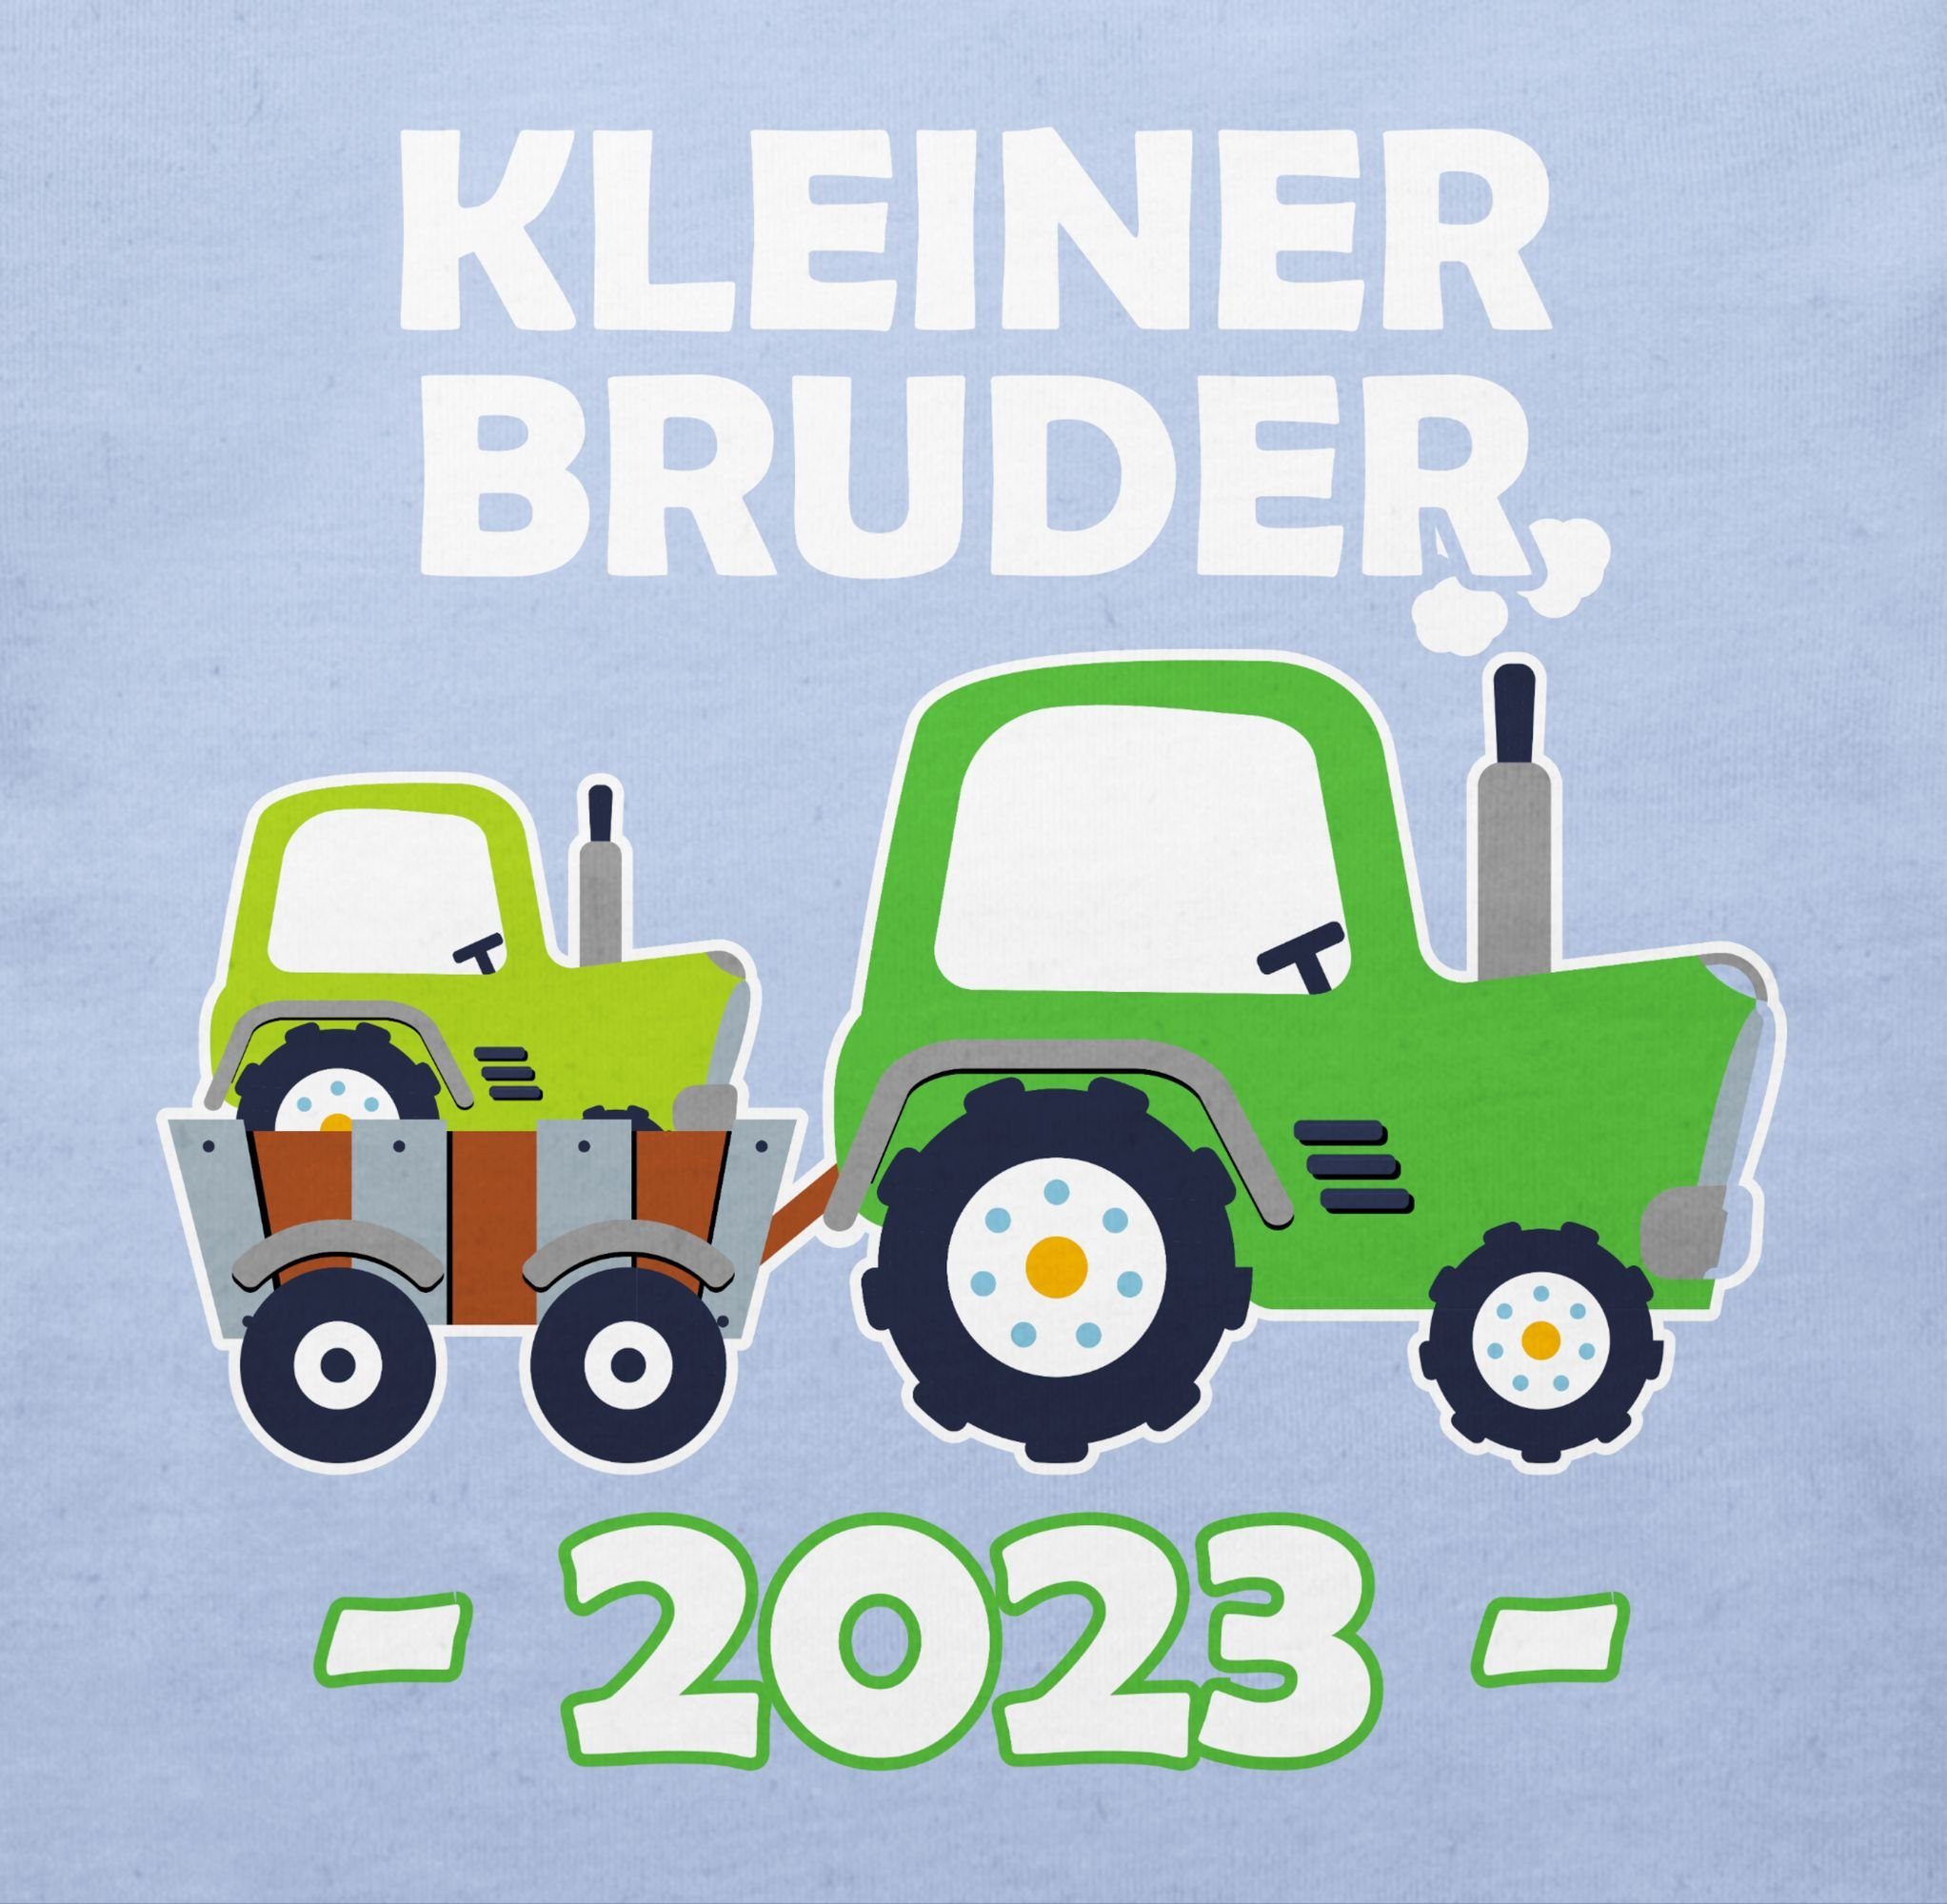 Shirtracer T-Shirt Kleiner 2023 Babyblau und kurzarm Schwester T-Shirt kleiner Geschwister shirt weiß bruder Traktor - - Bruder Baby Bruder 3